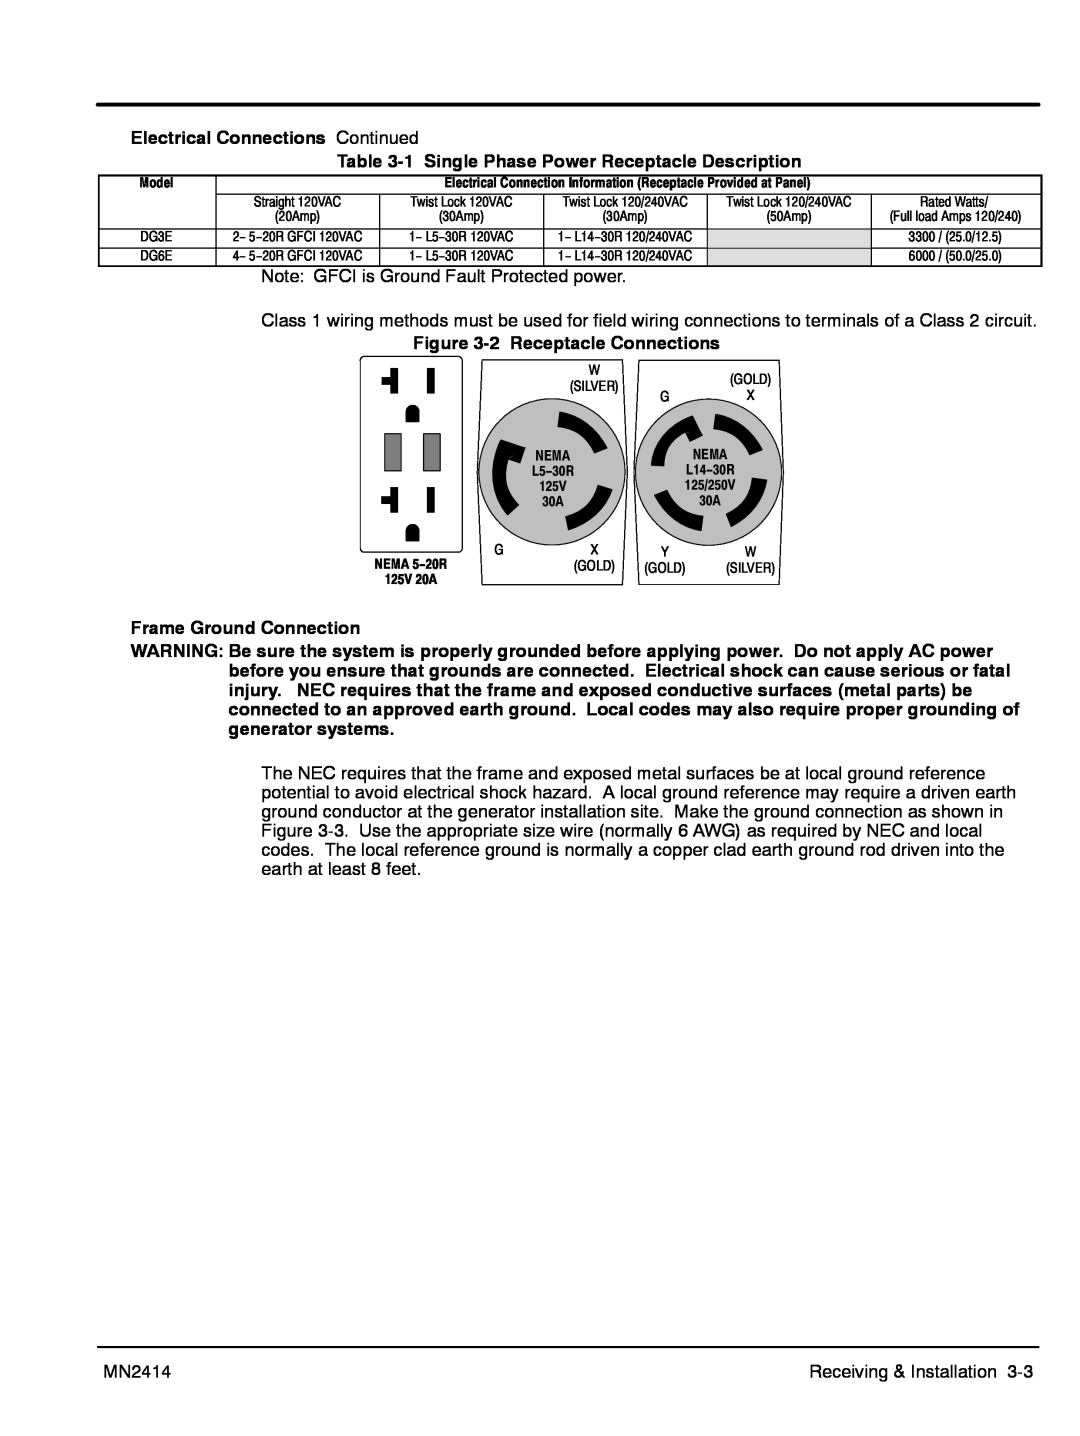 Baldor DG6E, DG3E manual Electrical Connections Continued 